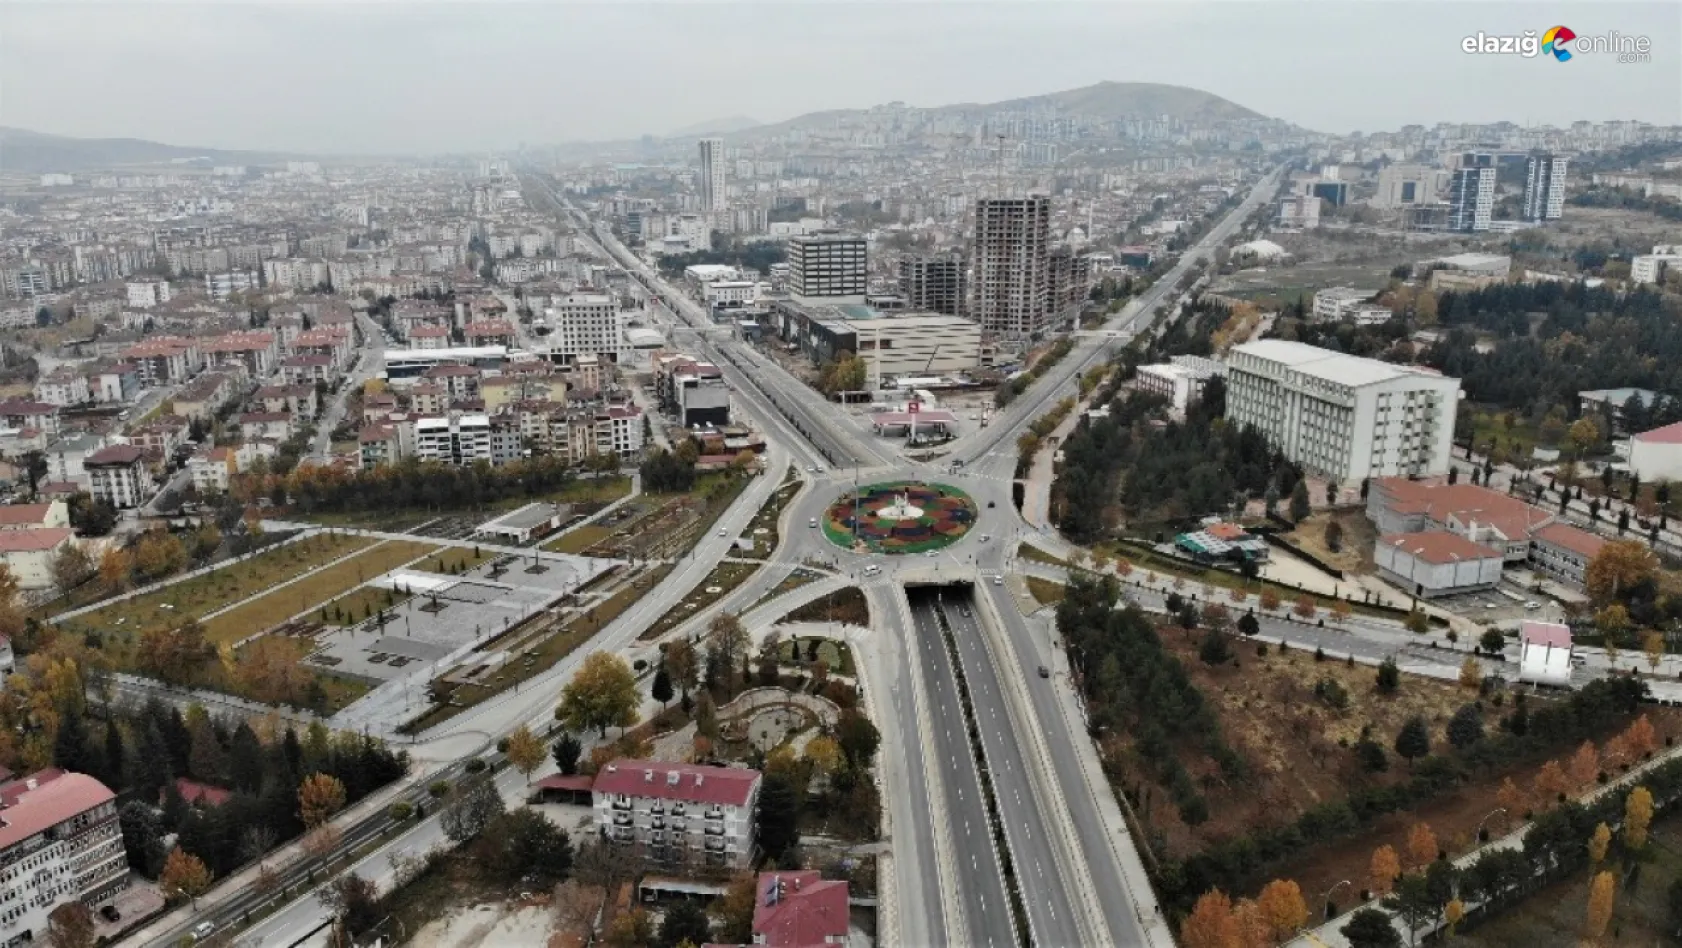 Elazığ Belediyesinden açıklama! Malatya Caddesi'nin bir bölümü trafiğe kapatılacak